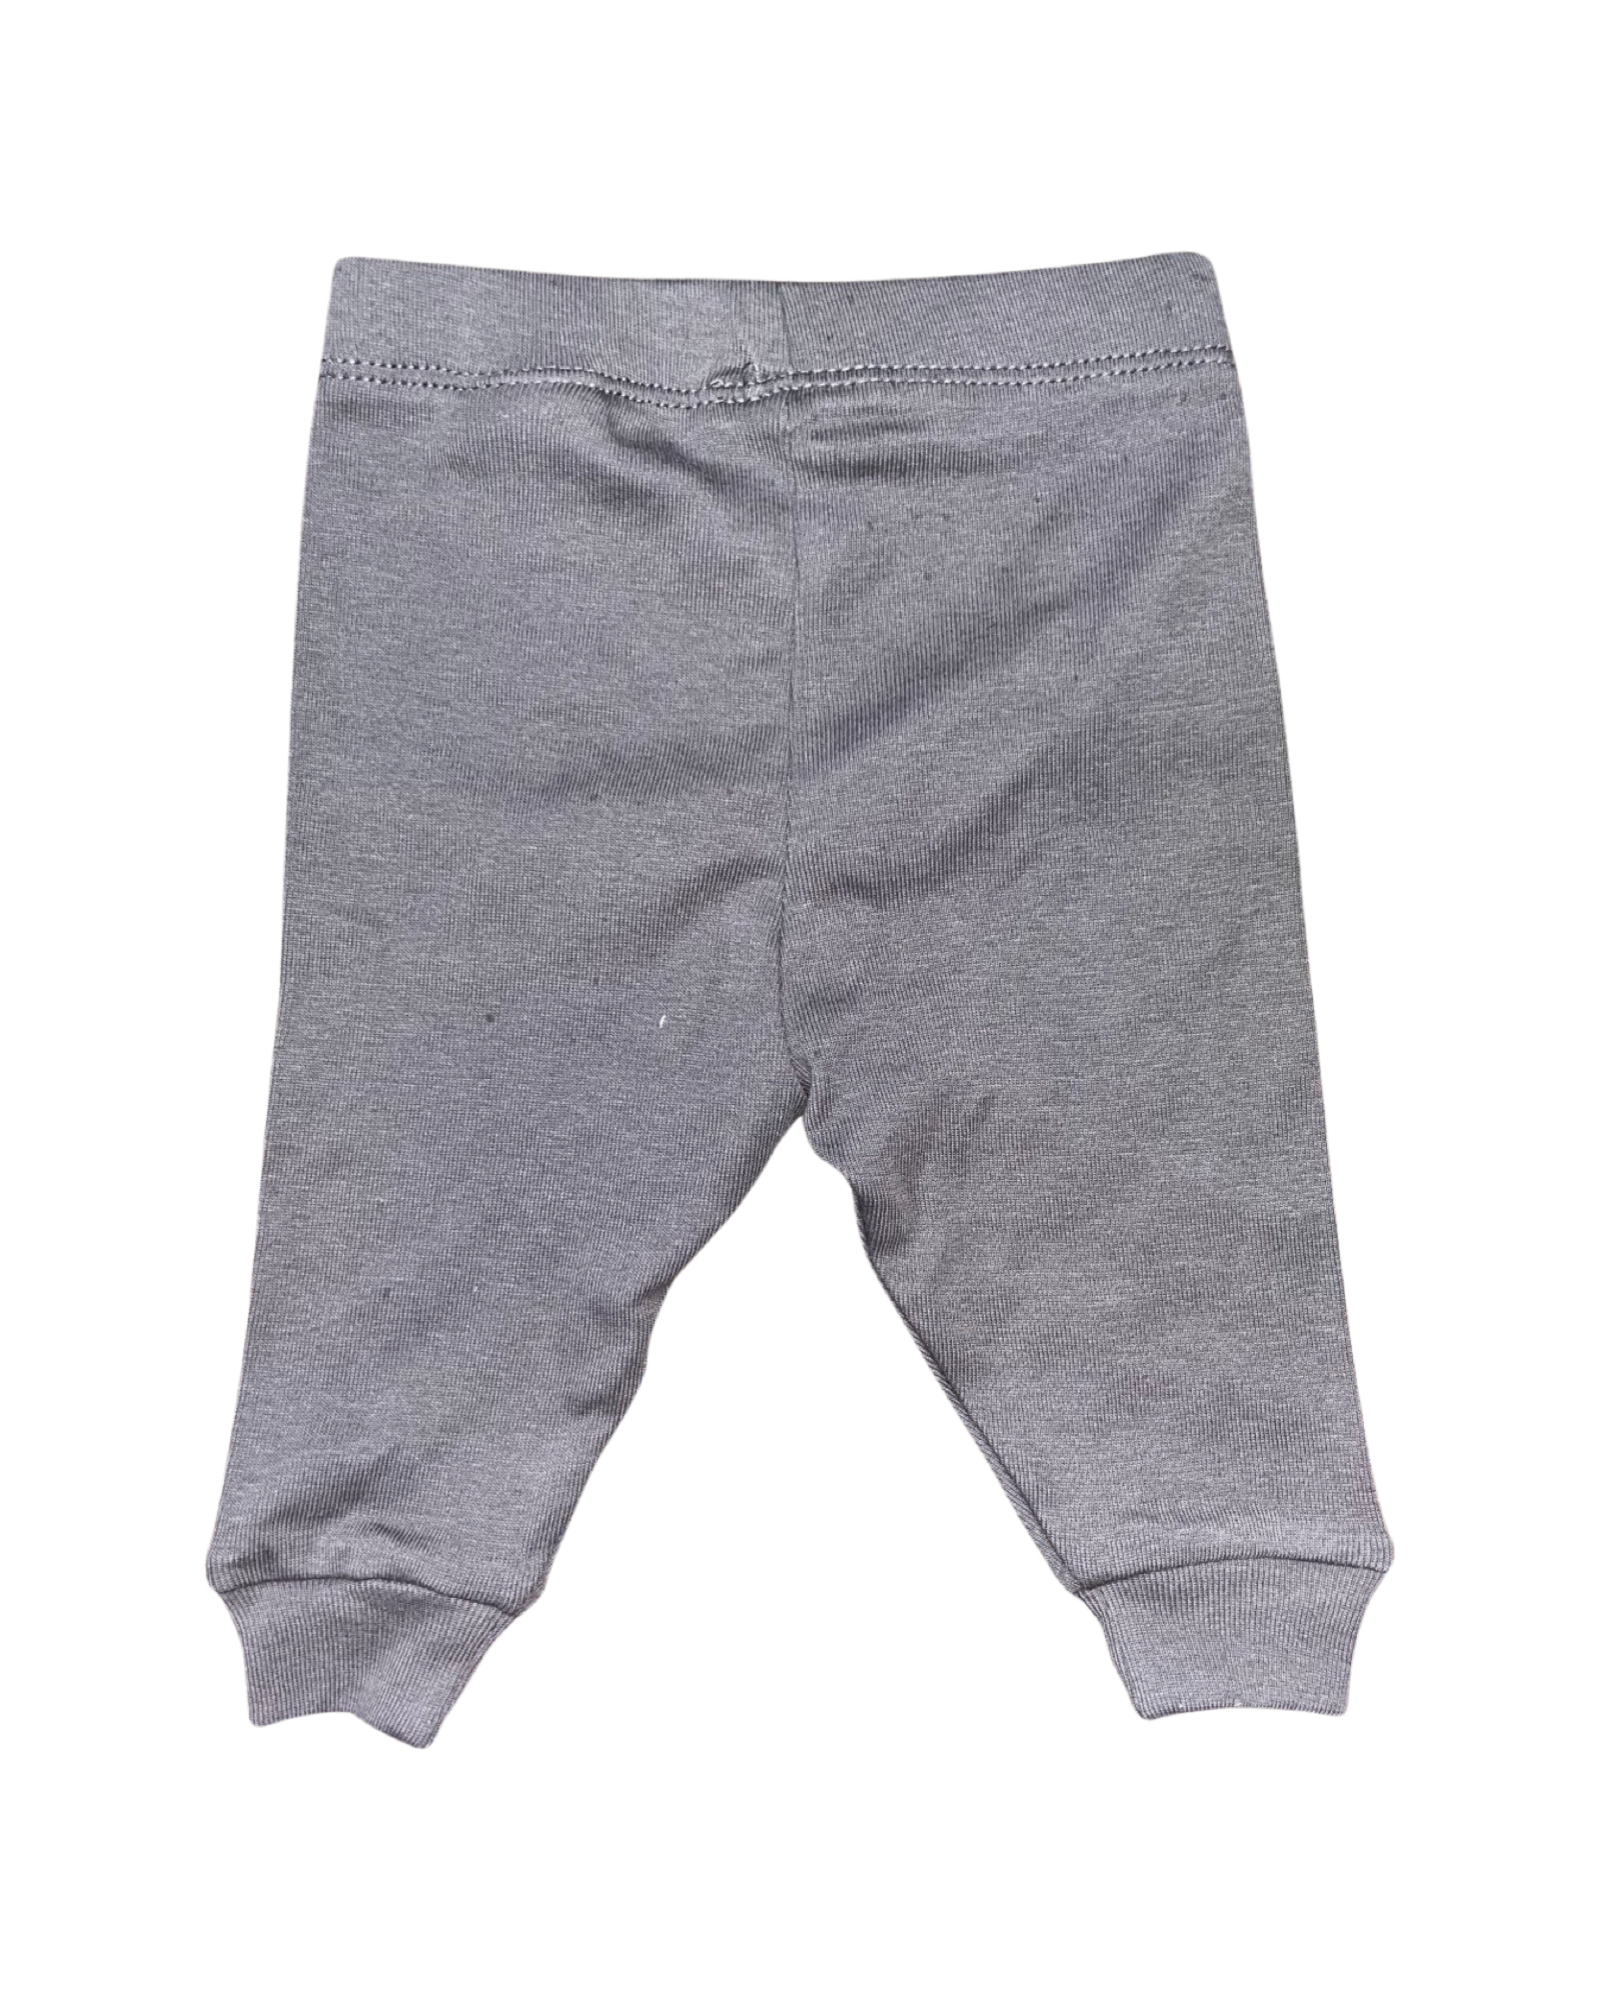 Grey Pants (0-3M)